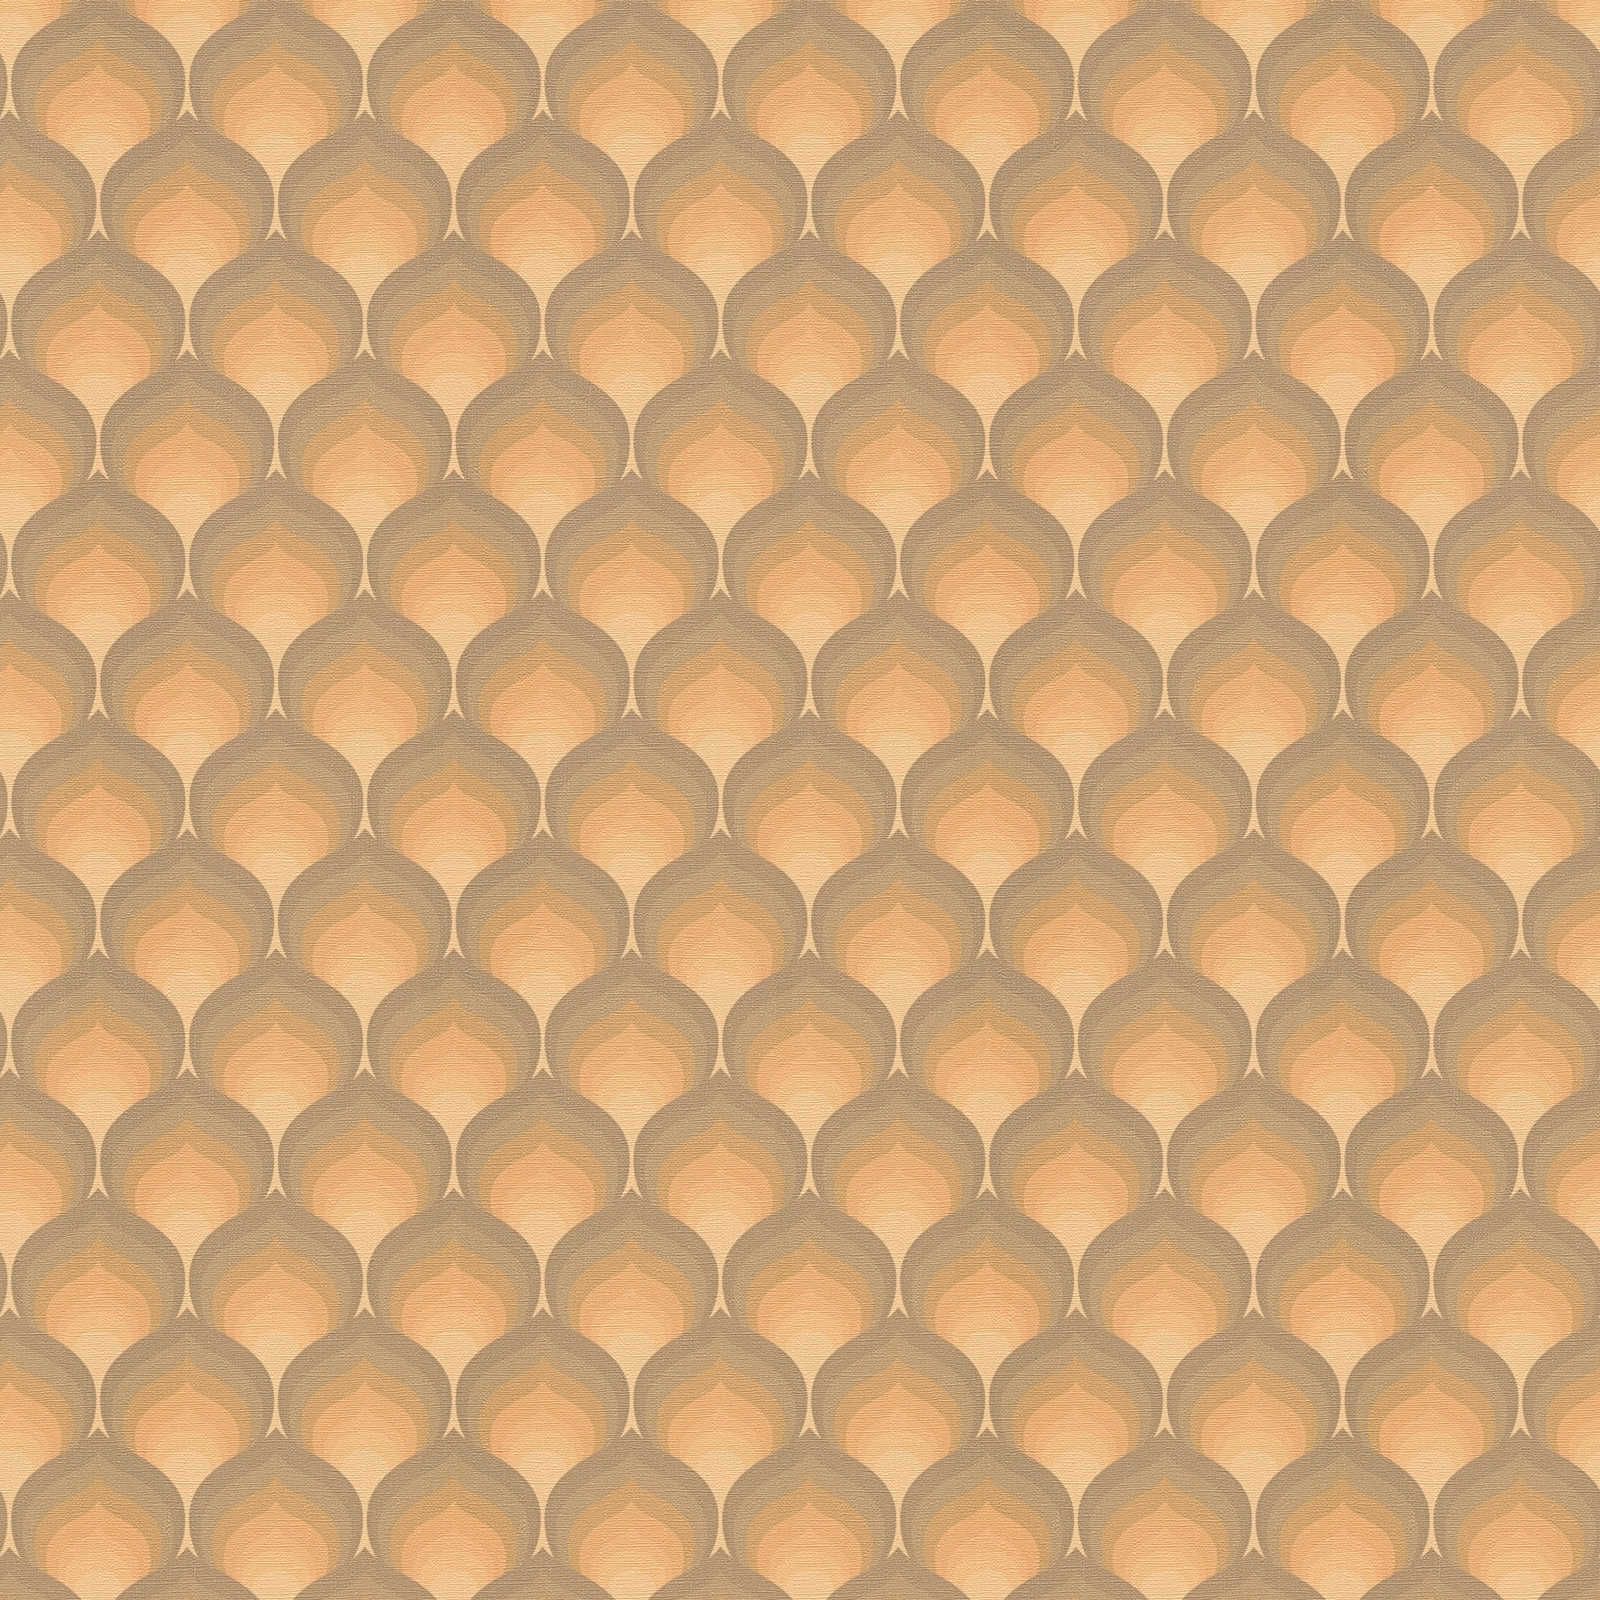 Retro behang met structuurschubbenpatroon - bruin, geel, oranje
